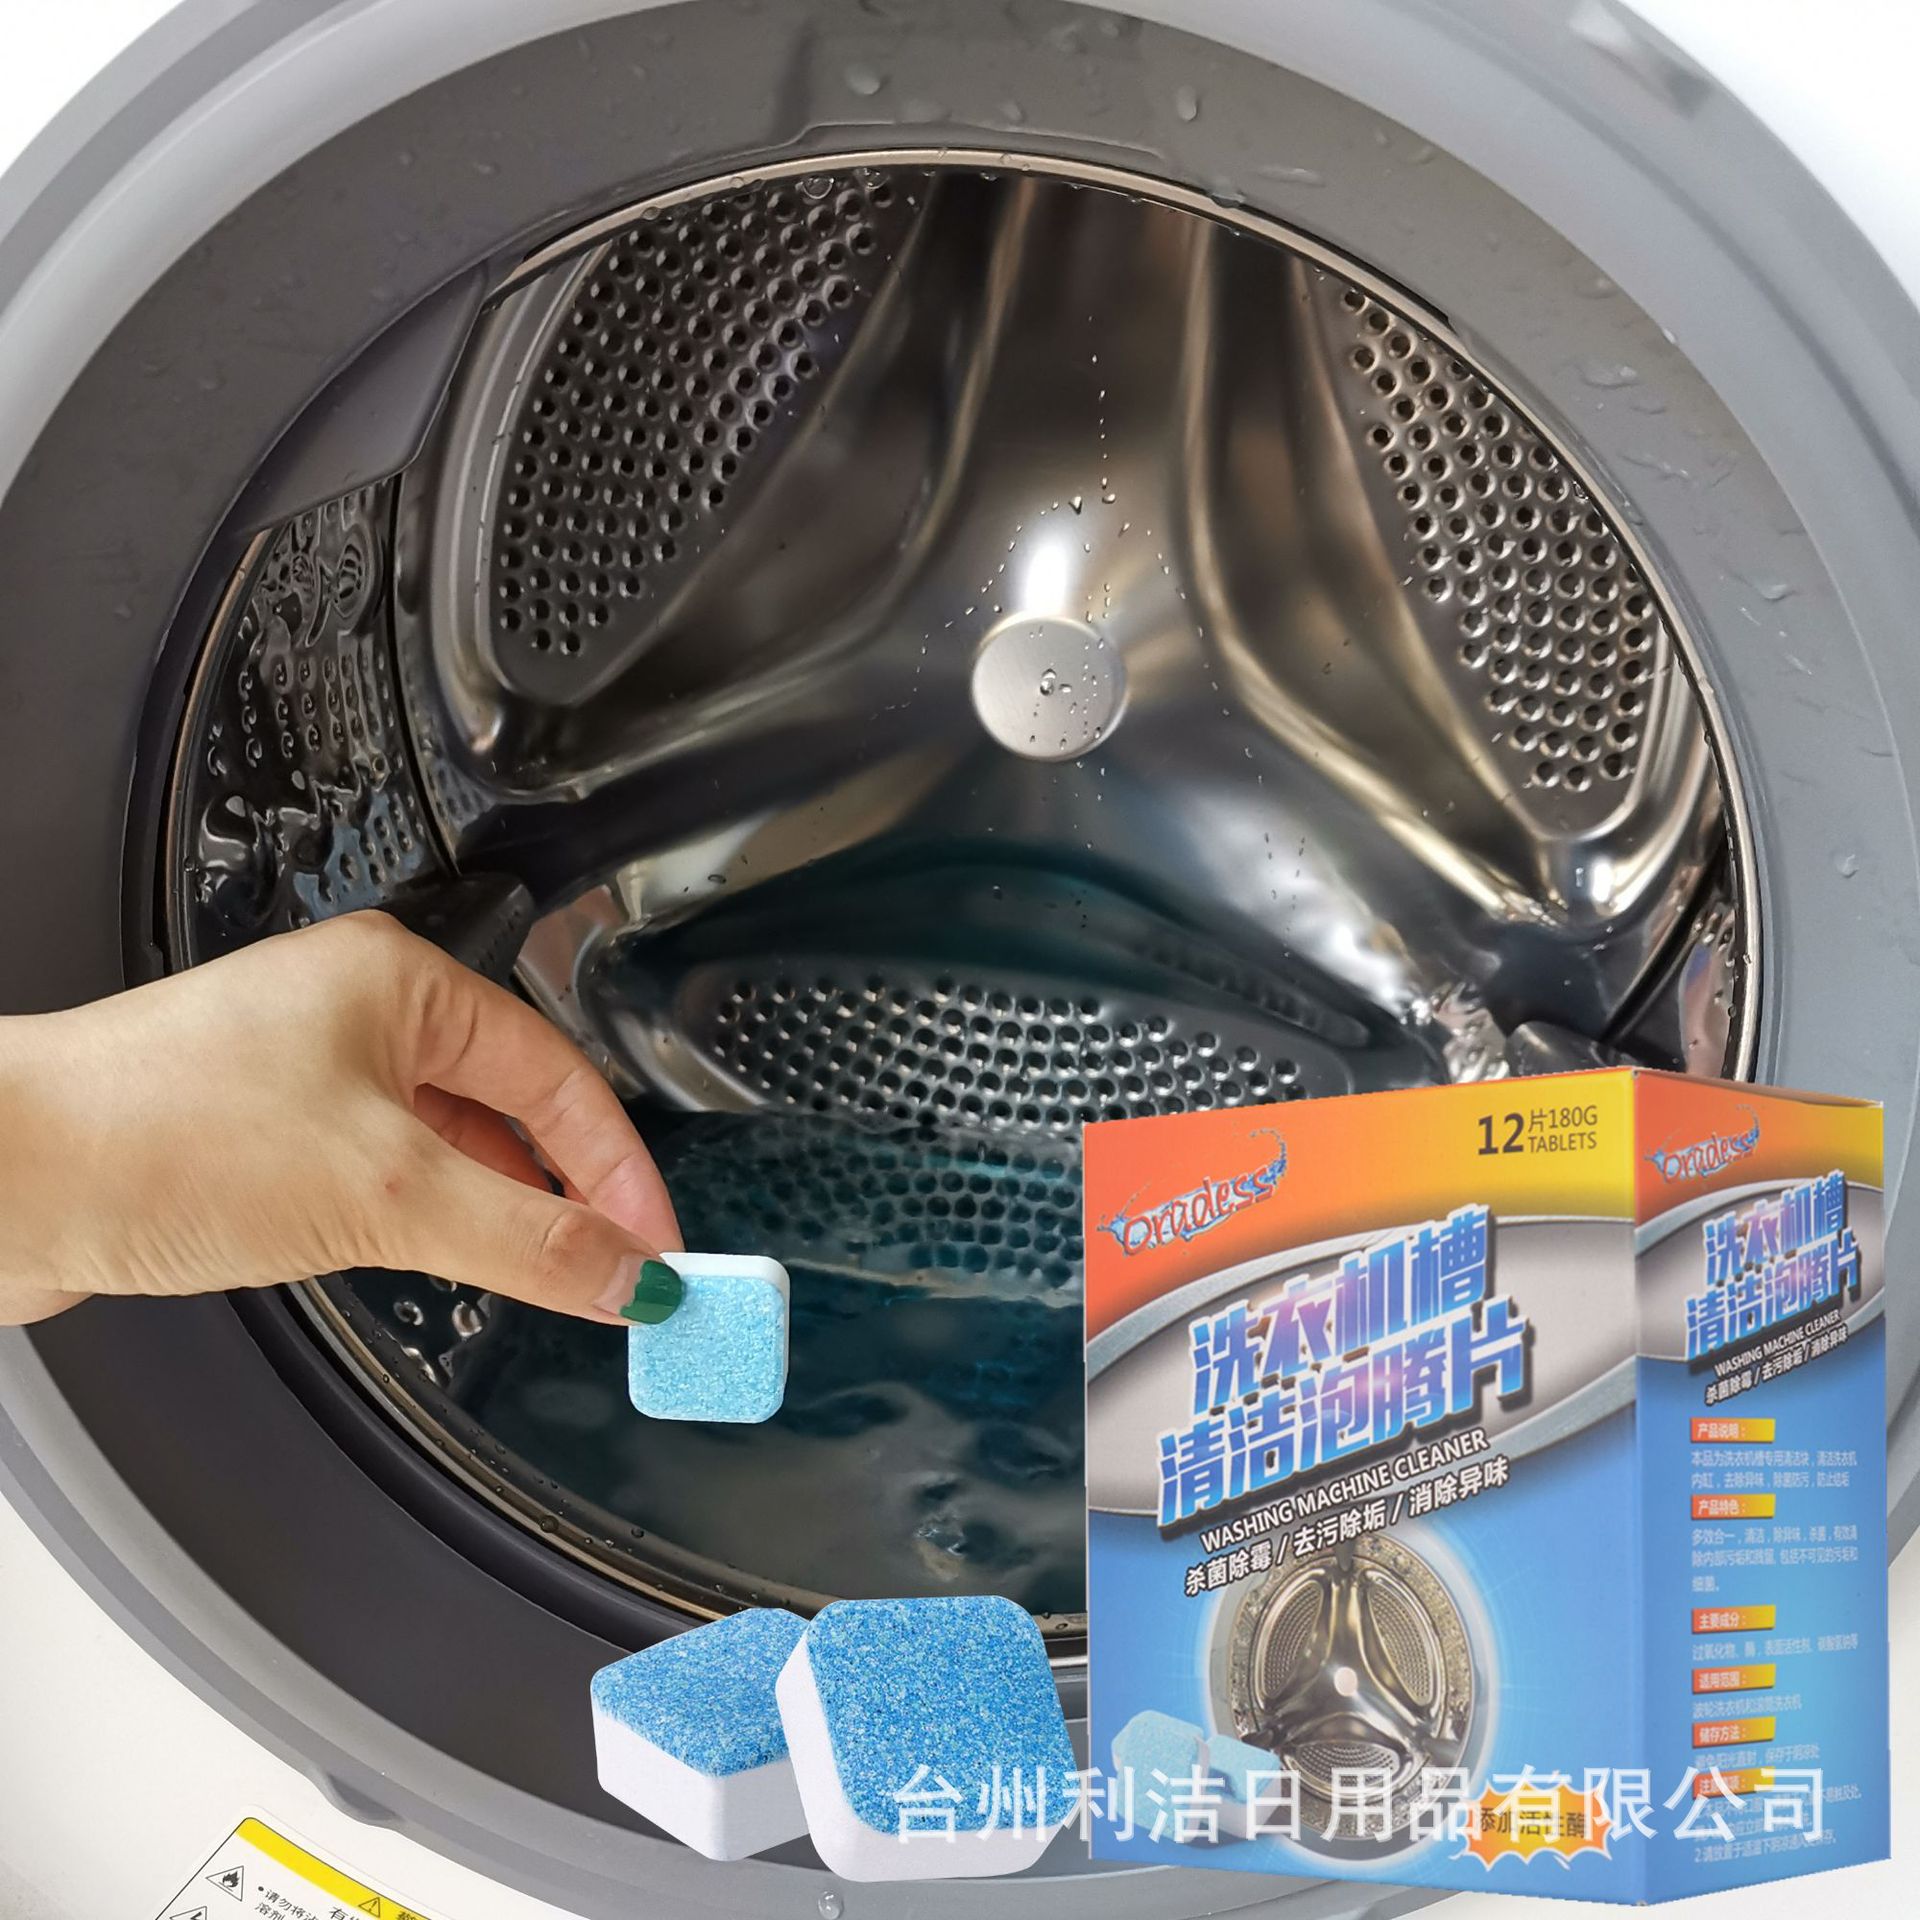 厂家直销洗衣机槽清洗剂泡腾片6片装|ru